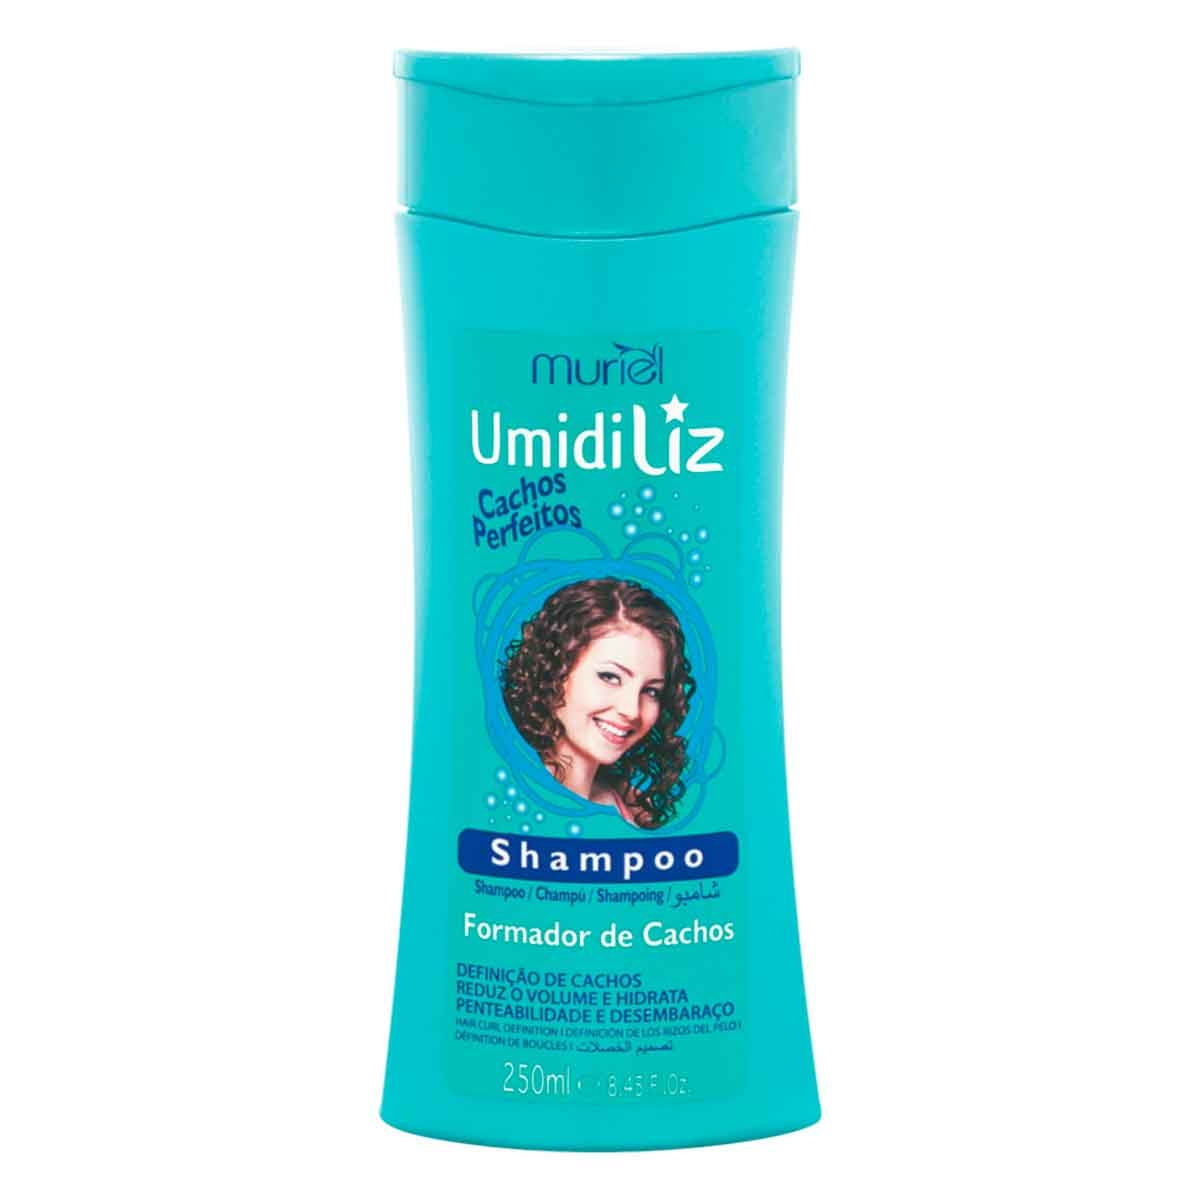 Shampoo Umidiliz Formador de Cachos com 250ml Muriel 250ml